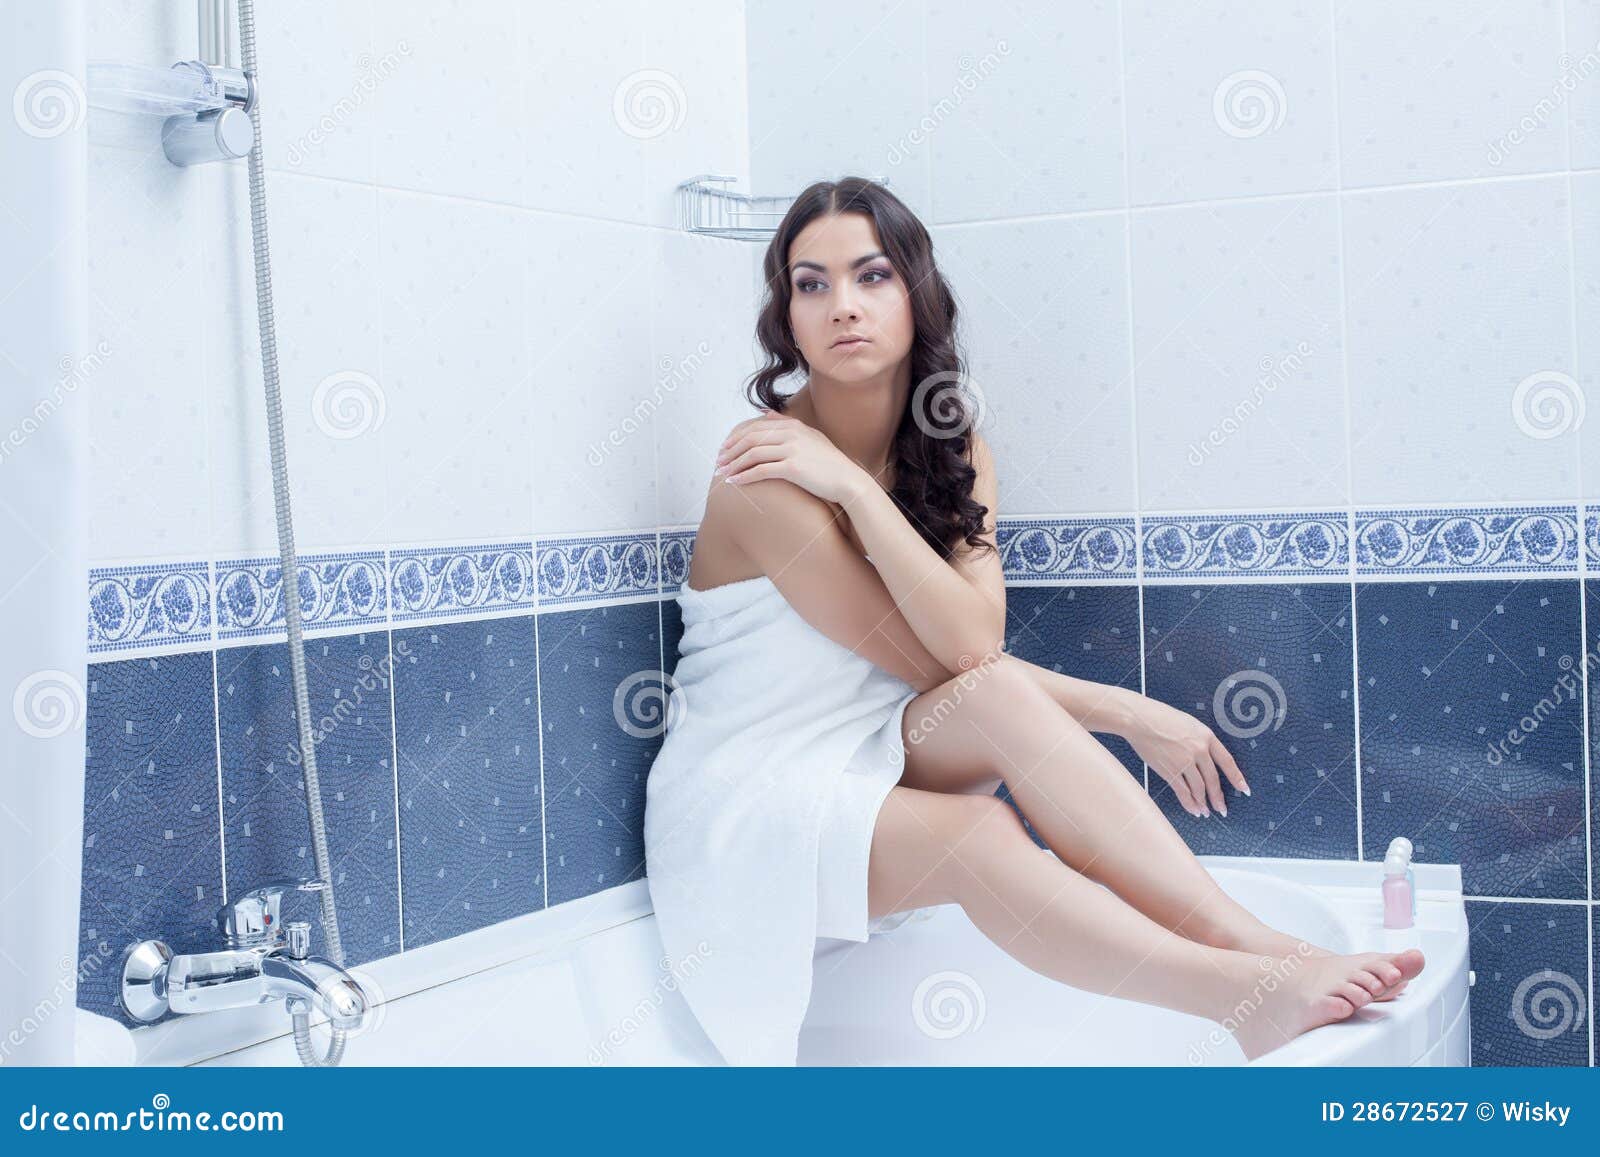 Женщина после ванной. Женщина сидит в ванной. Девушка сидит в ванной. Девушка в полотенце сидит на ванной. Девушка сидит на ванной фотосессия.